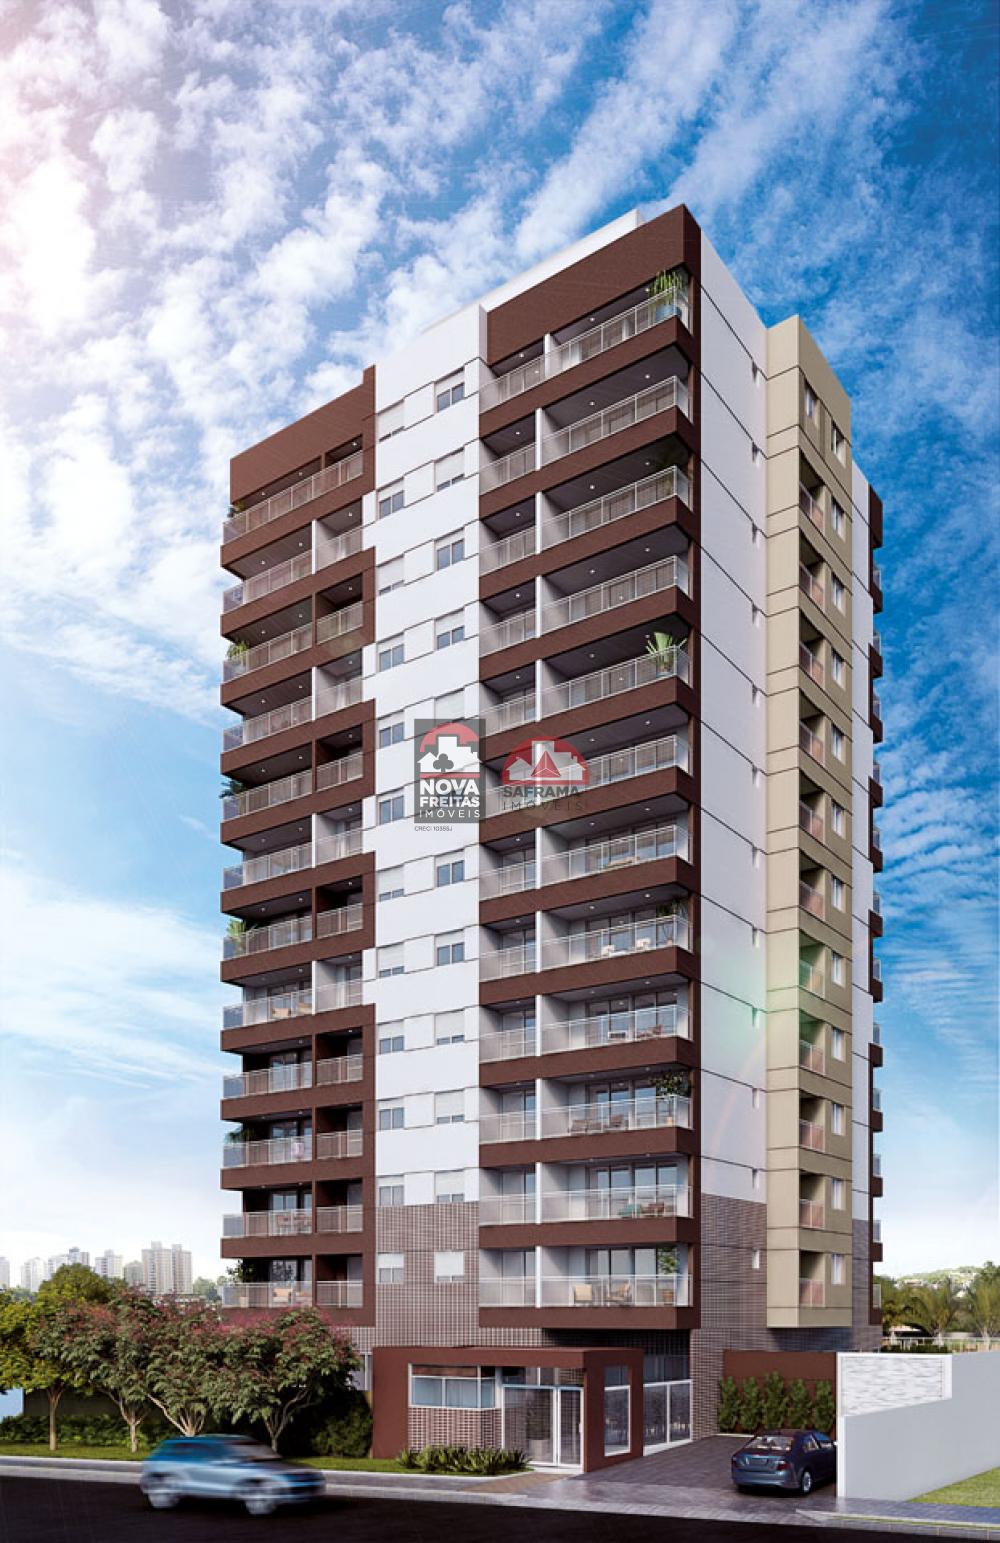 Comprar Apartamento / Padrão em São José dos Campos R$ 209.900,00 - Foto 1